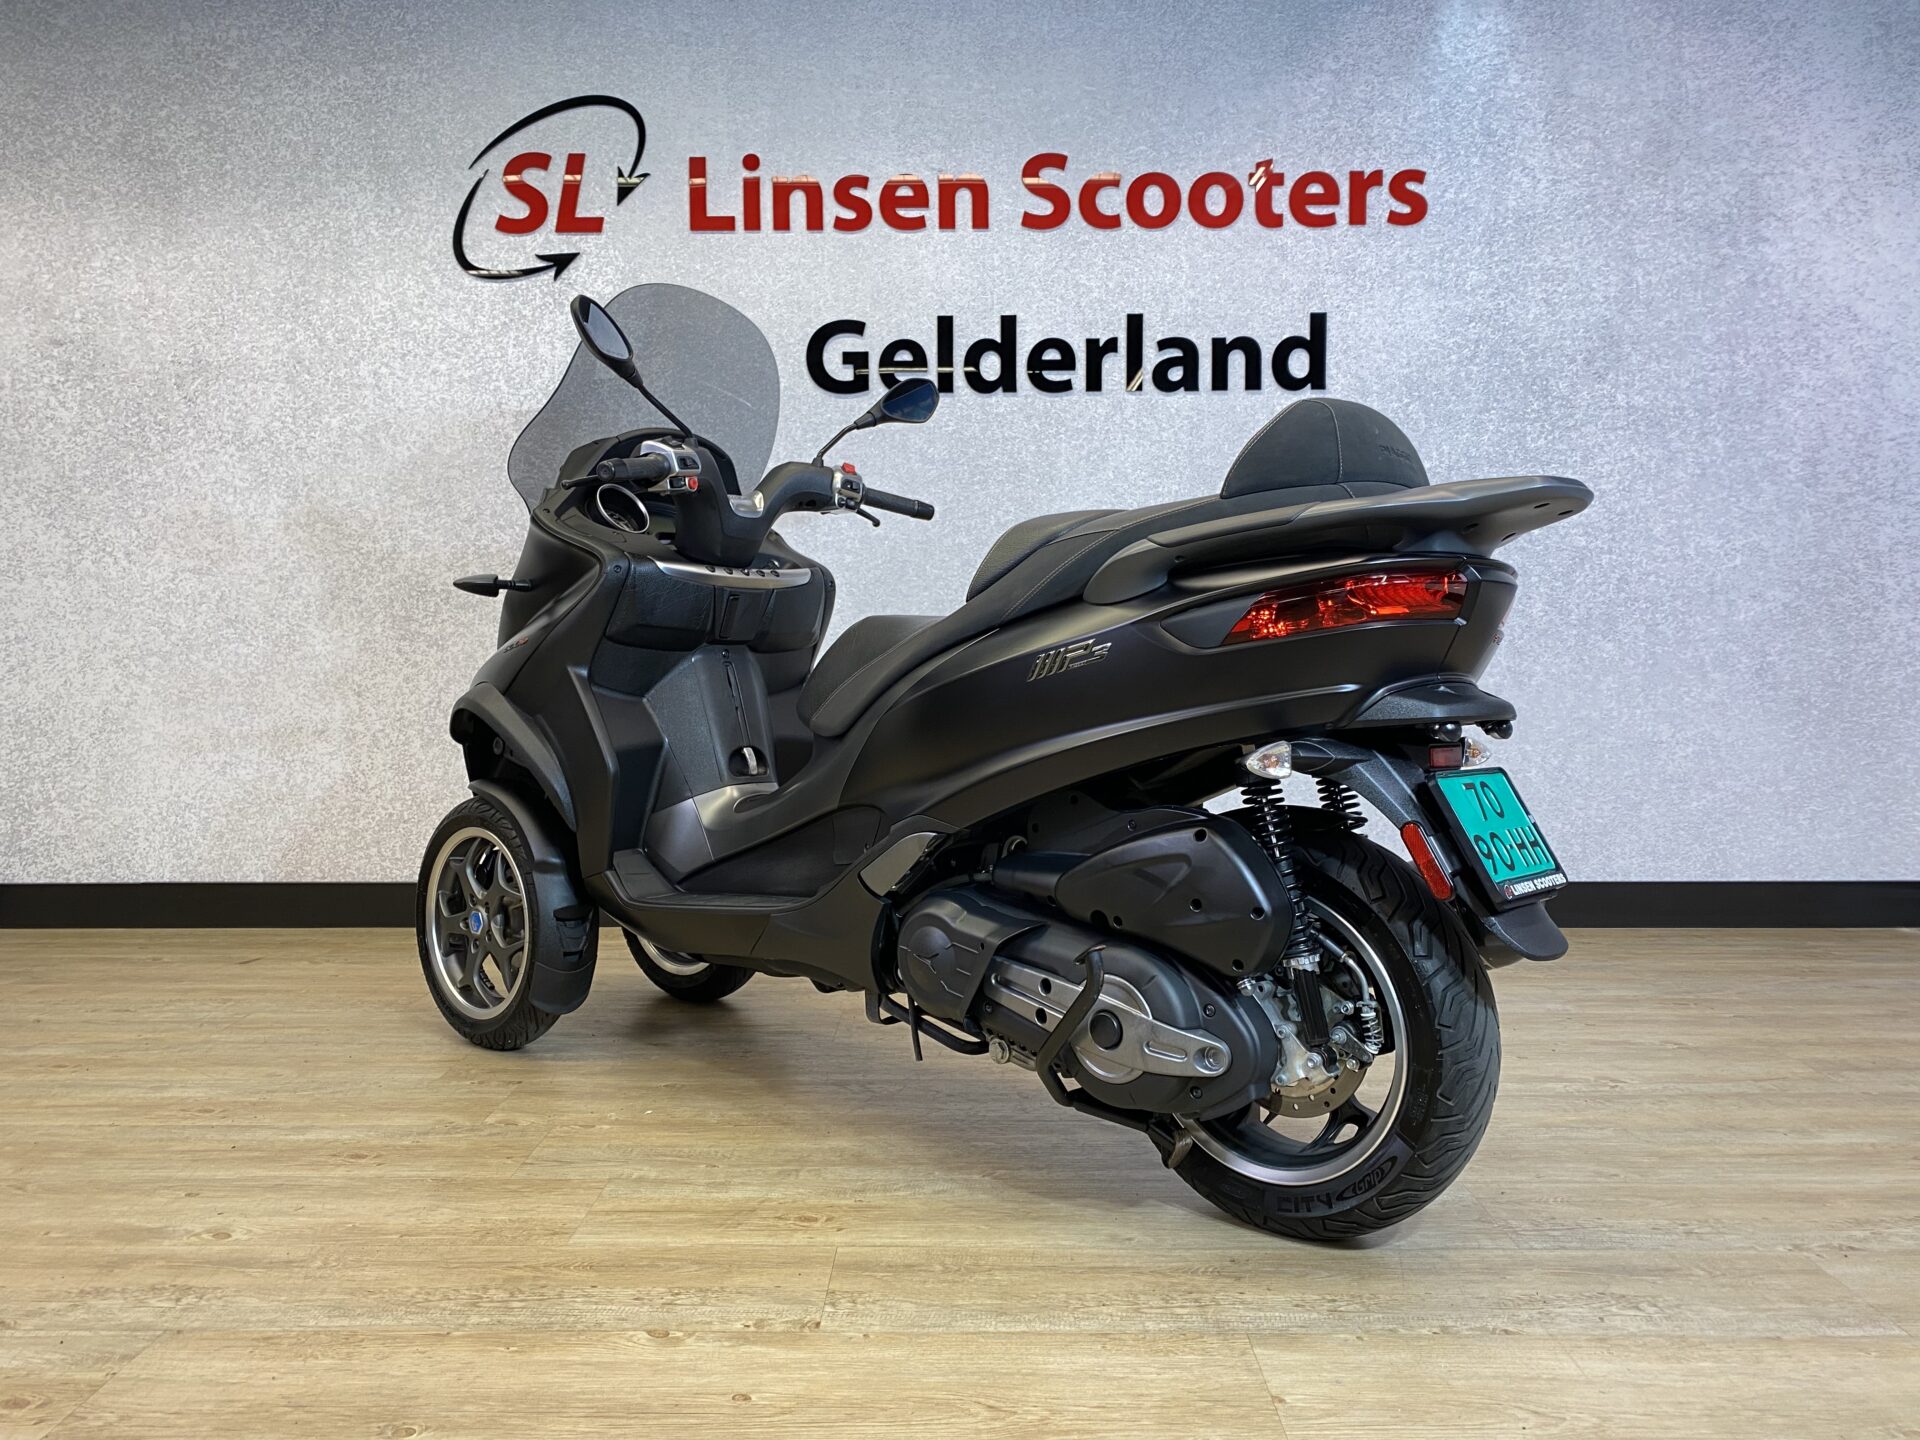 server Allerlei soorten overloop Piaggio MP3 Sport 500cc LT Mat Zwart 2018 – Linsen Scooters Gelderland